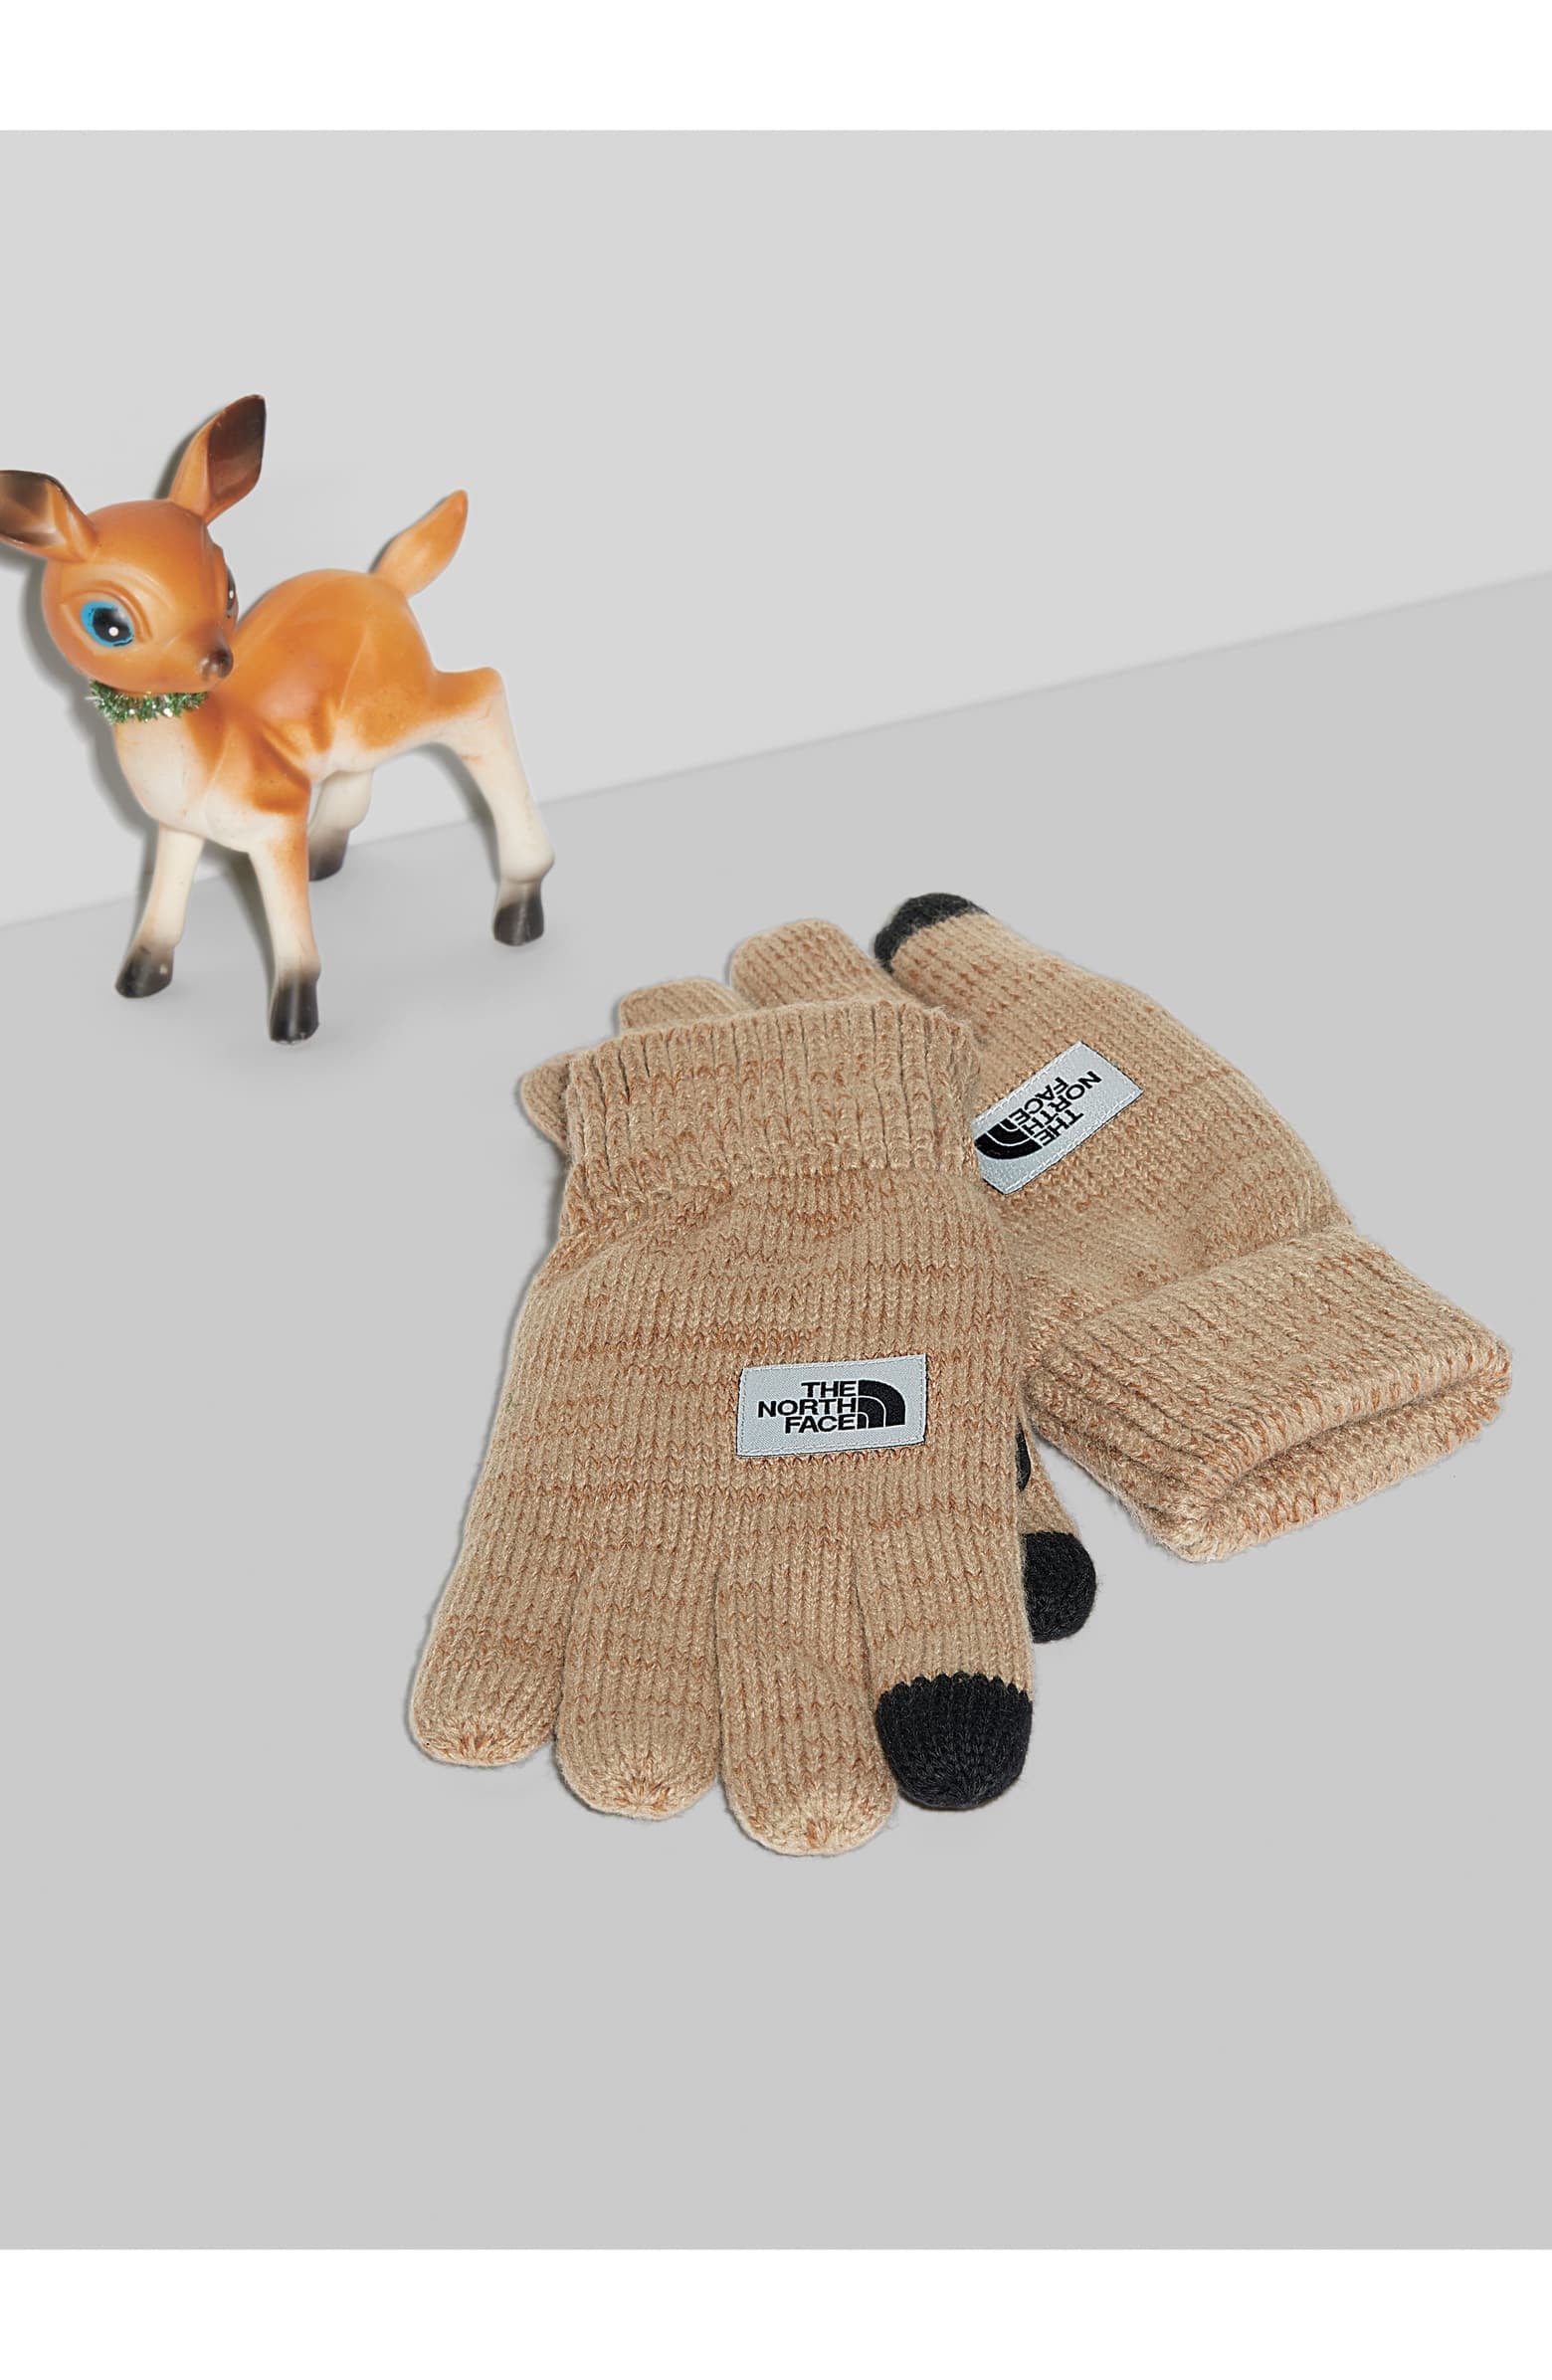 etip salty dog knit tech gloves